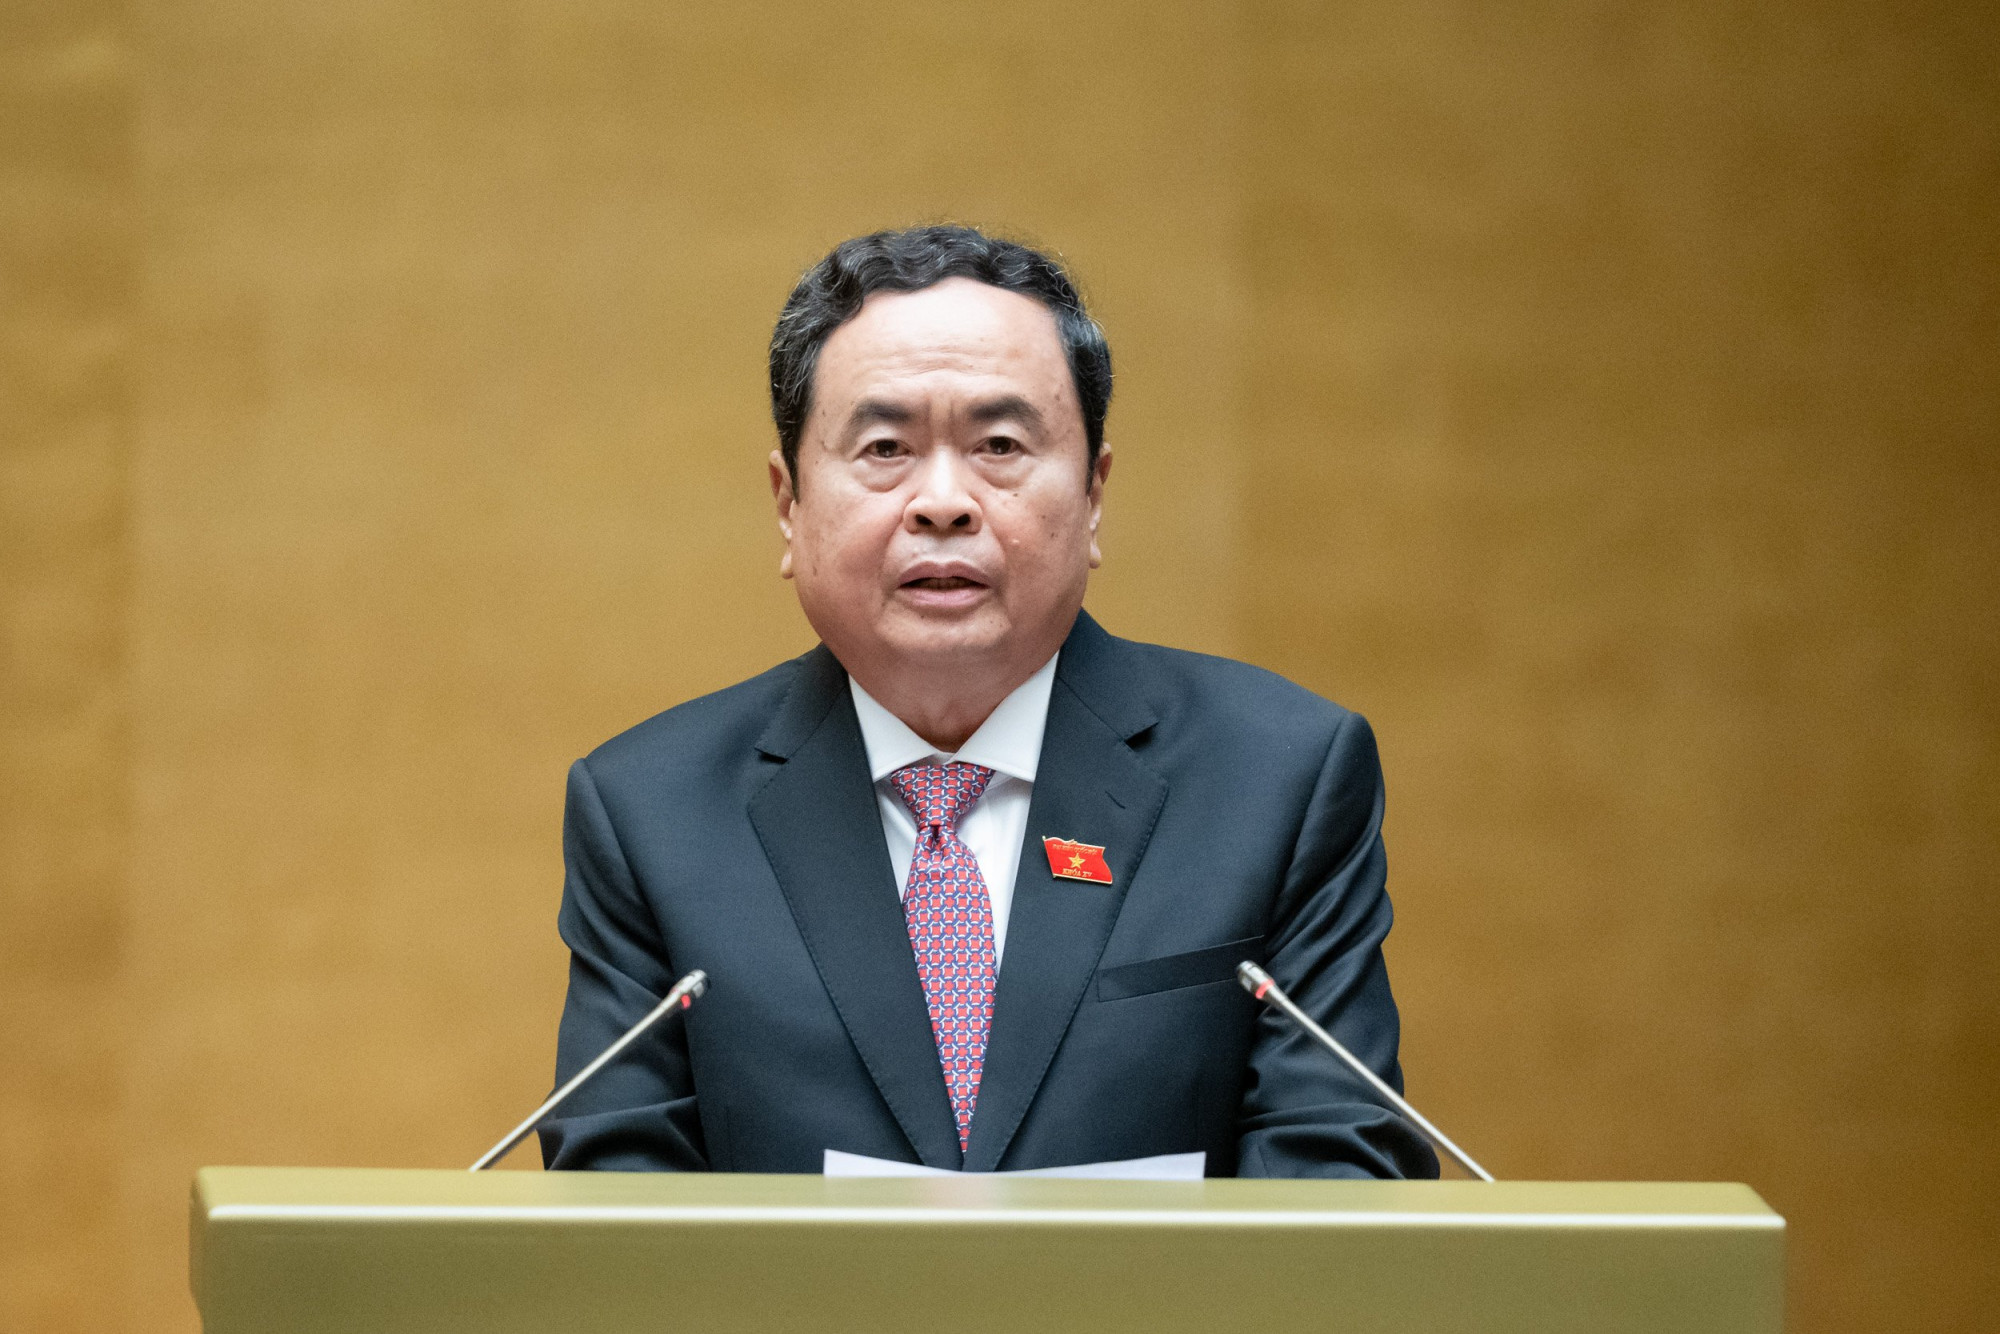 Ông Trần Thanh Mẫn được bầu làm Chủ tịch Quốc hội khóa XV